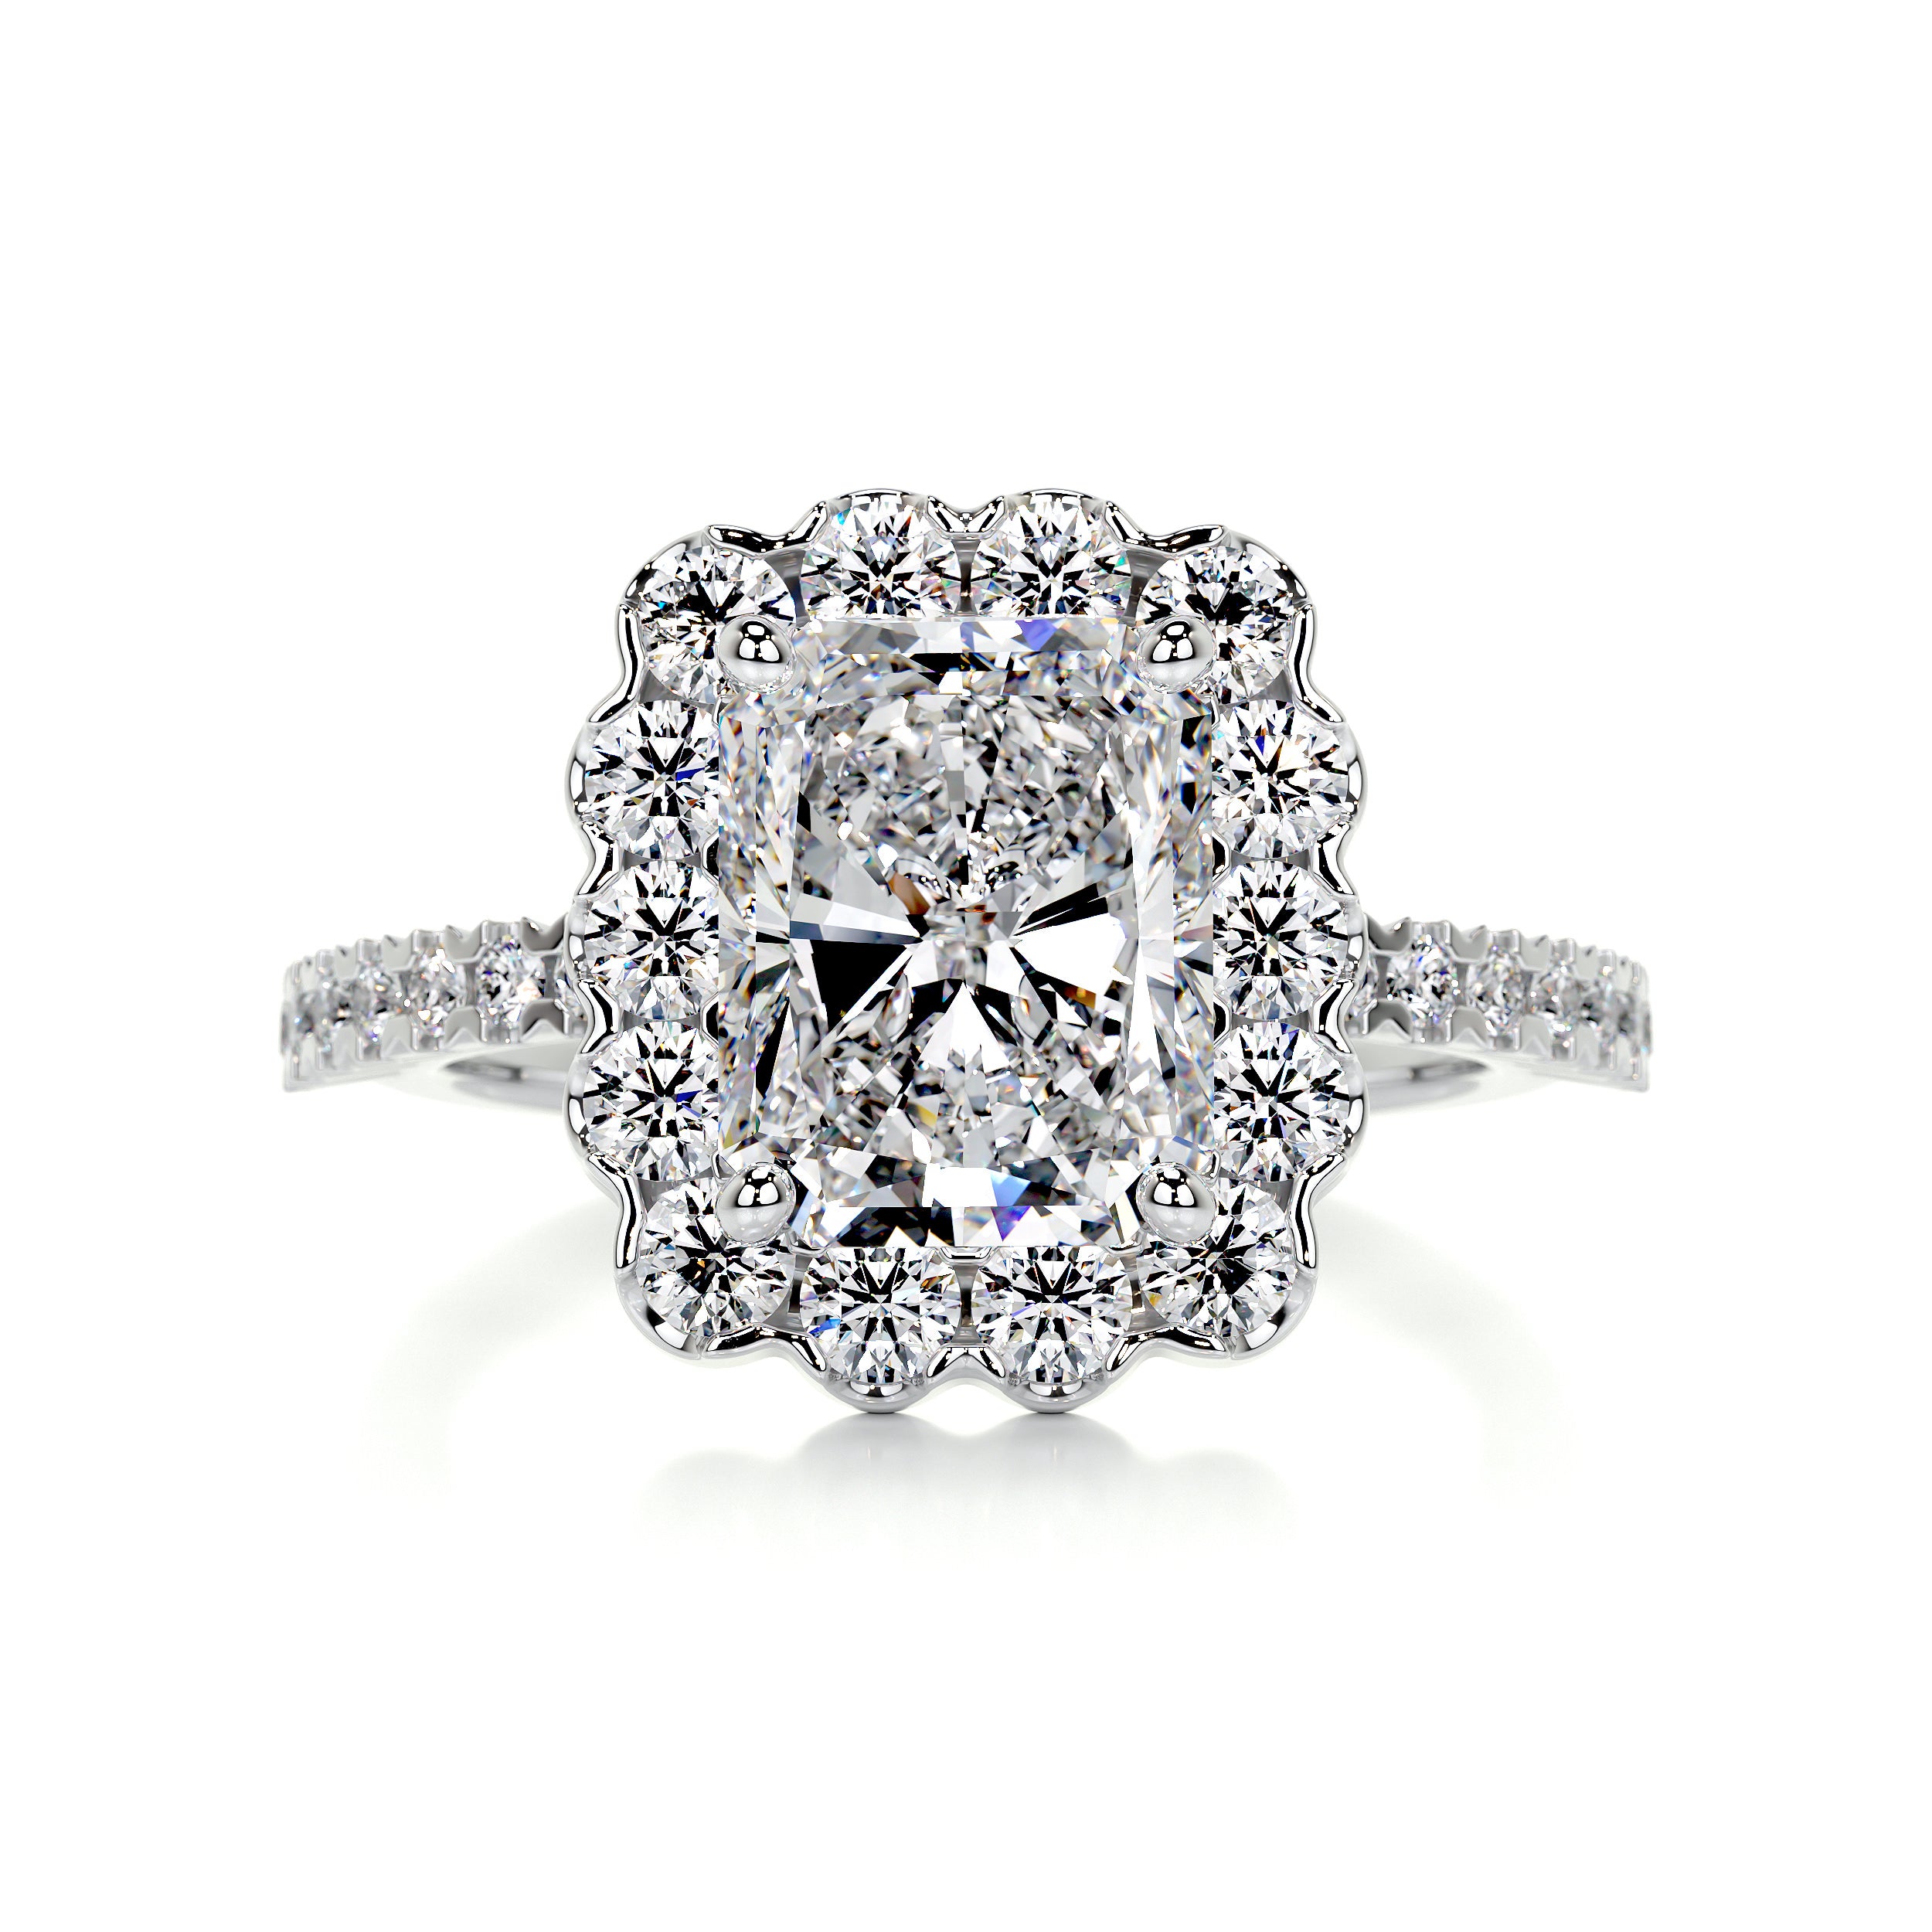 Sherry Diamond Engagement Ring   (2.5 Carat) -14K White Gold